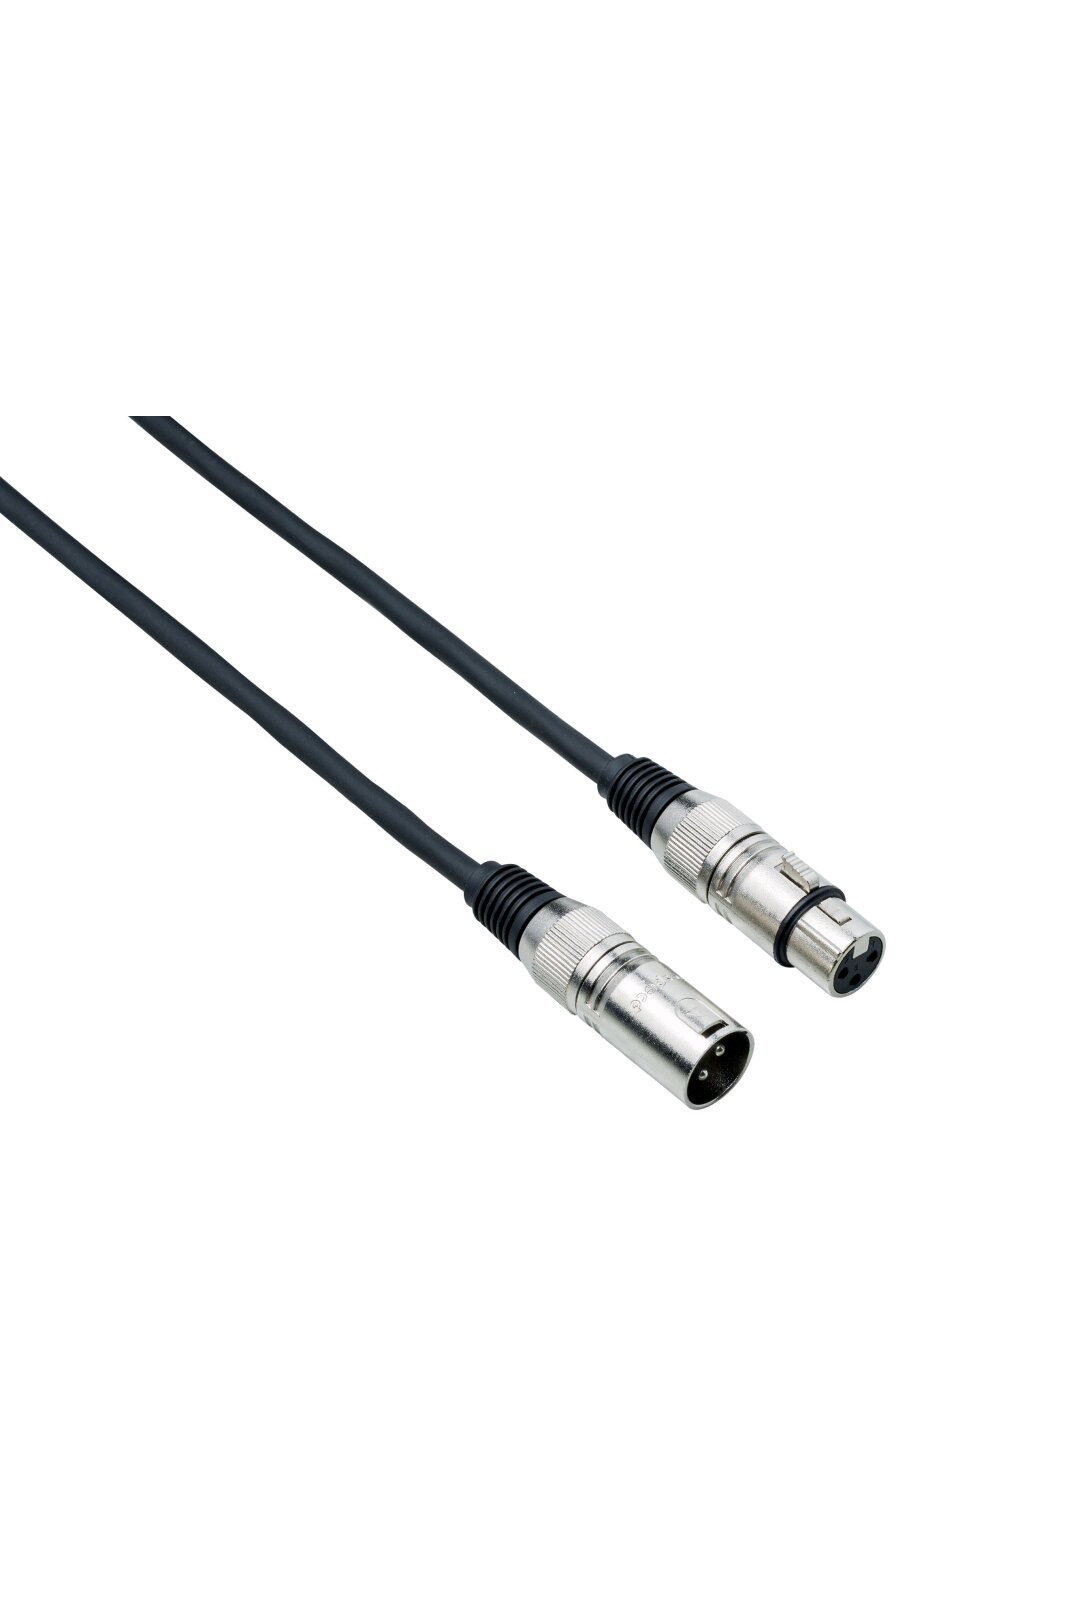 Bespeco DMX003 DMX cable 3 m : photo 1